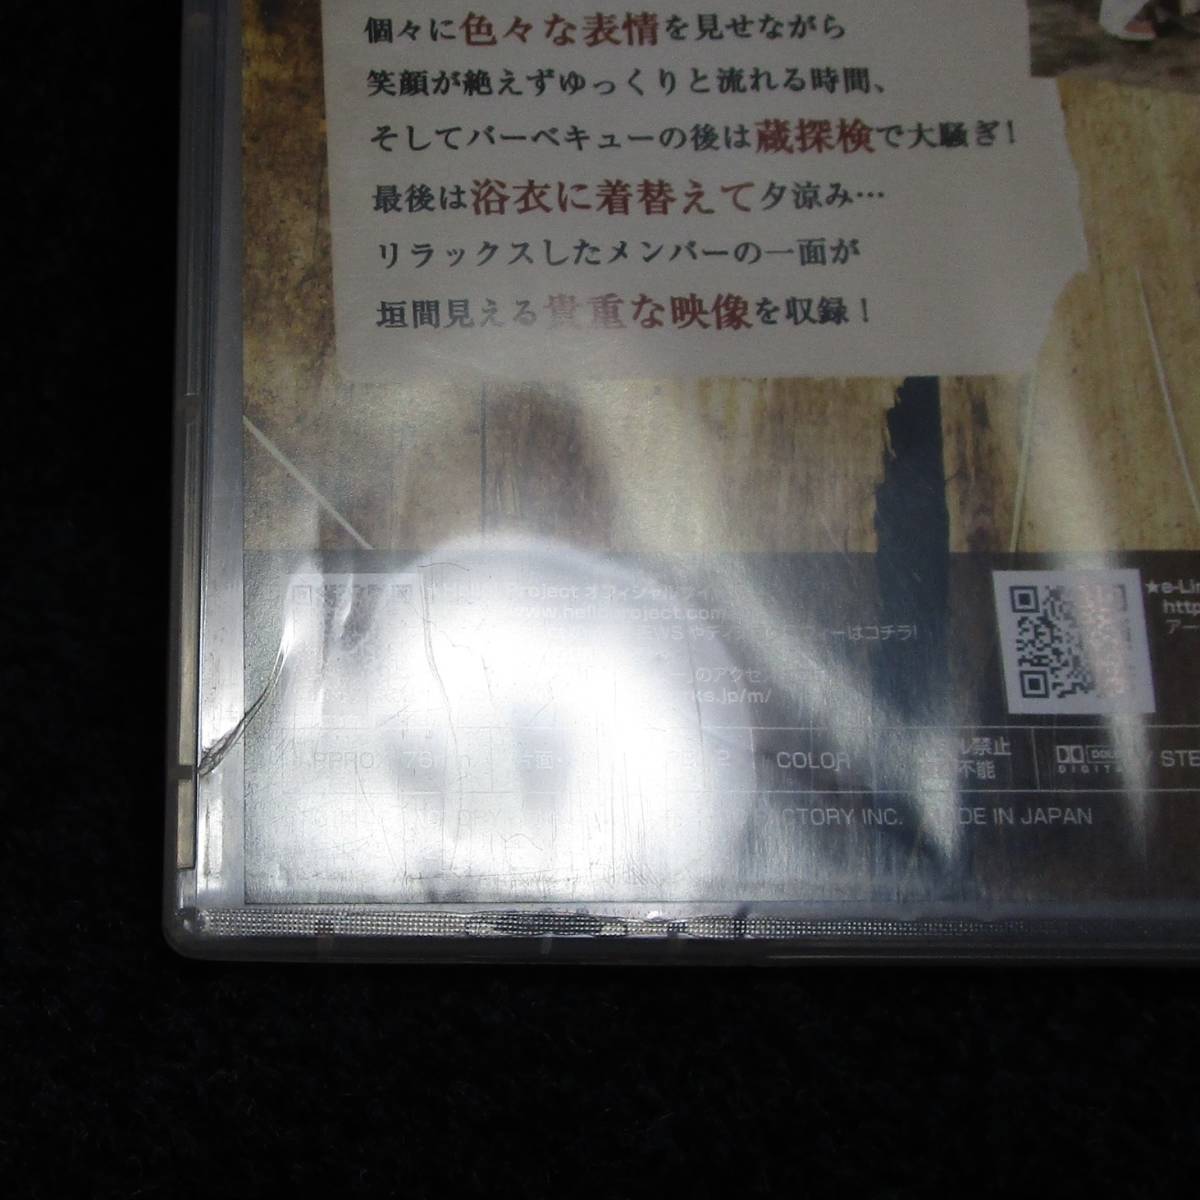 [DVD] 難有 モーニング娘。 DVD MAGAZINE VOL.63 DVDマガジン _画像5